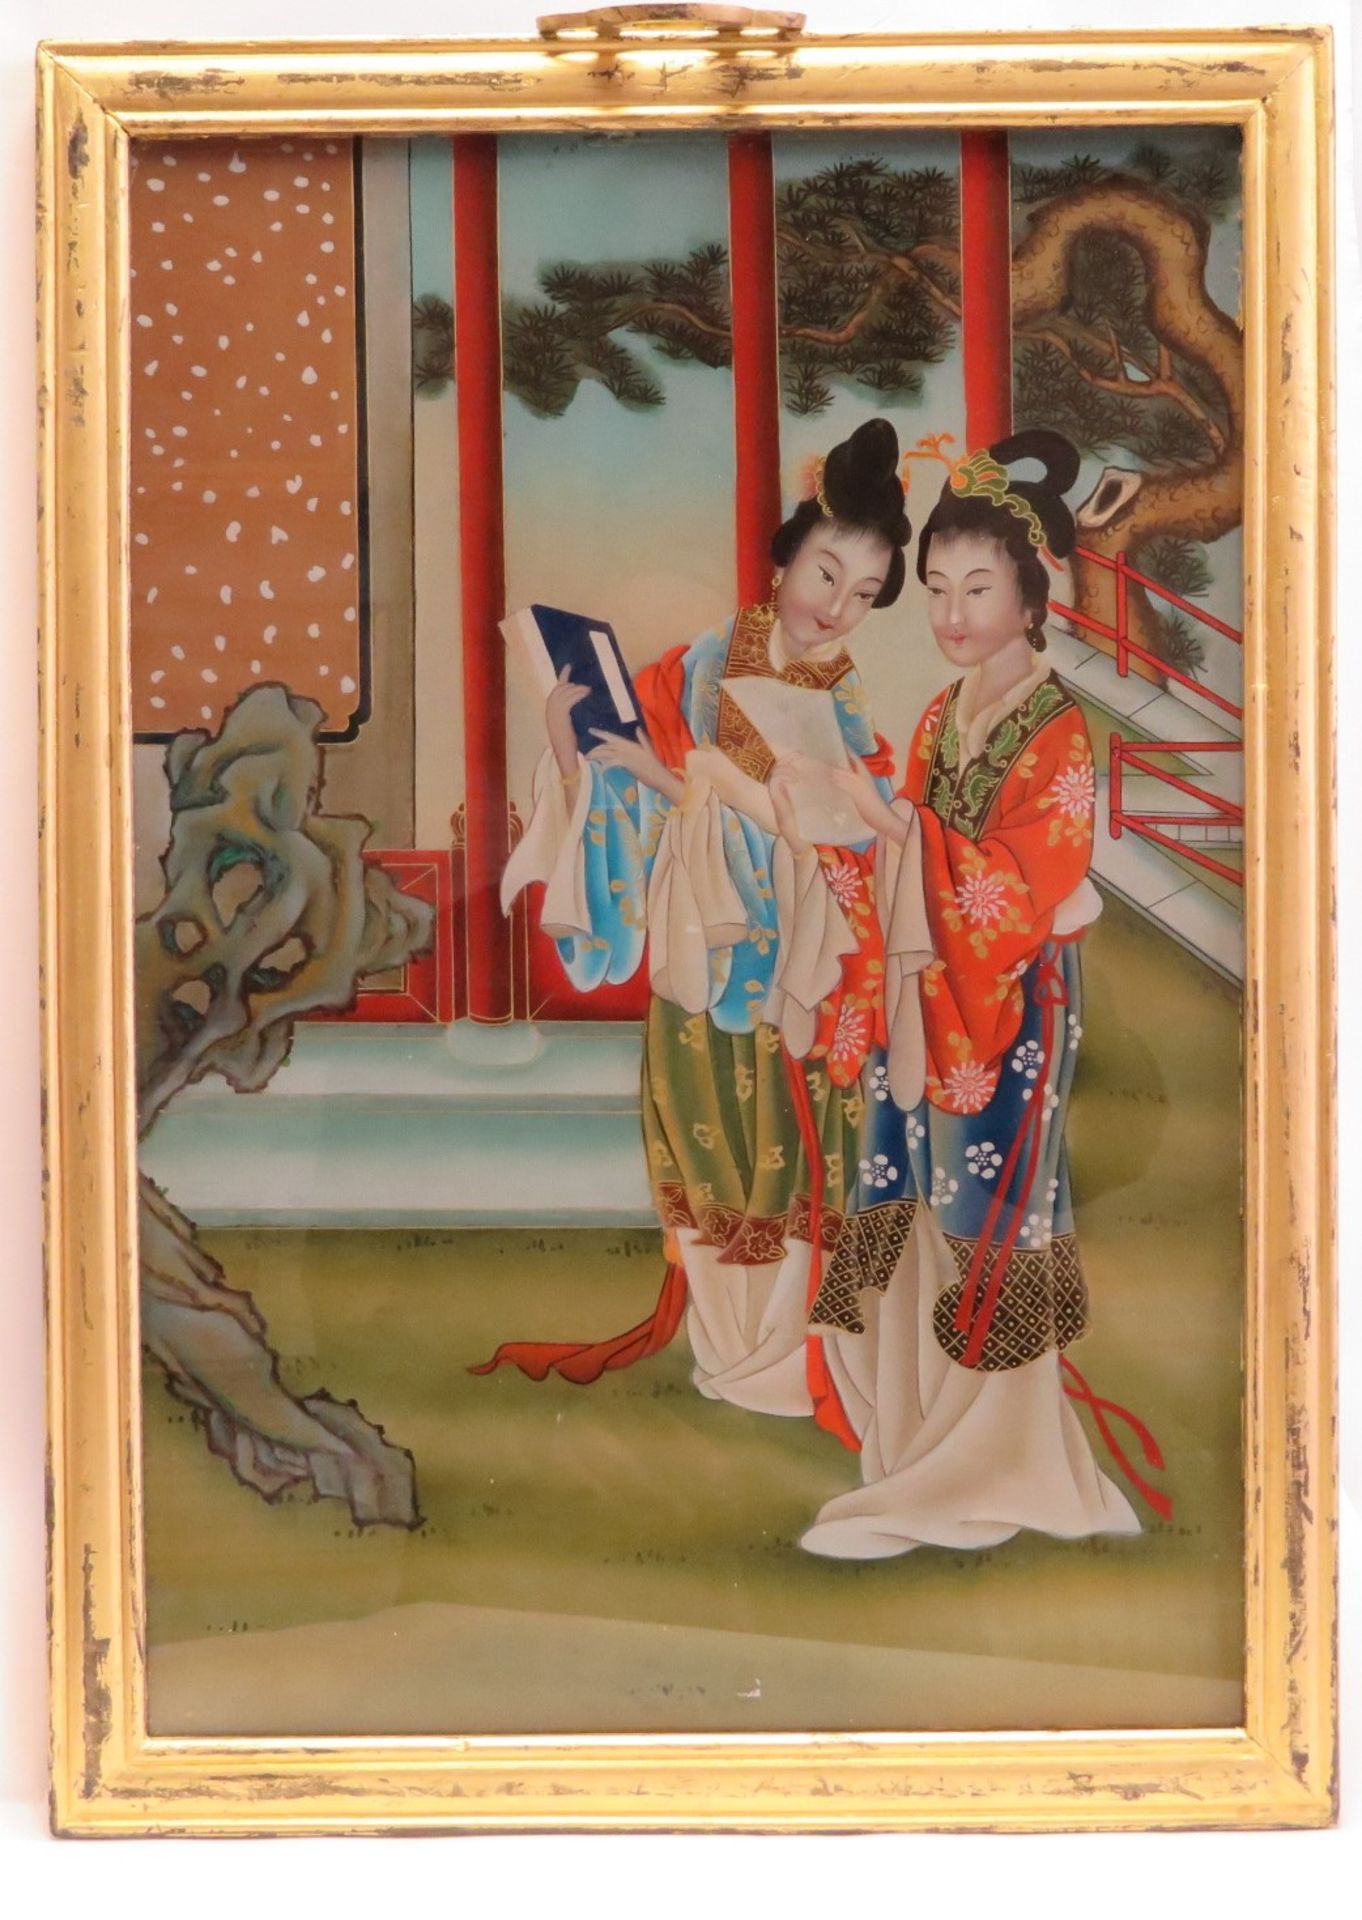 Hinterglasmalerei, Japan, "Zwei Geishas", 55 x 40 cm, Edelholzrahmen.